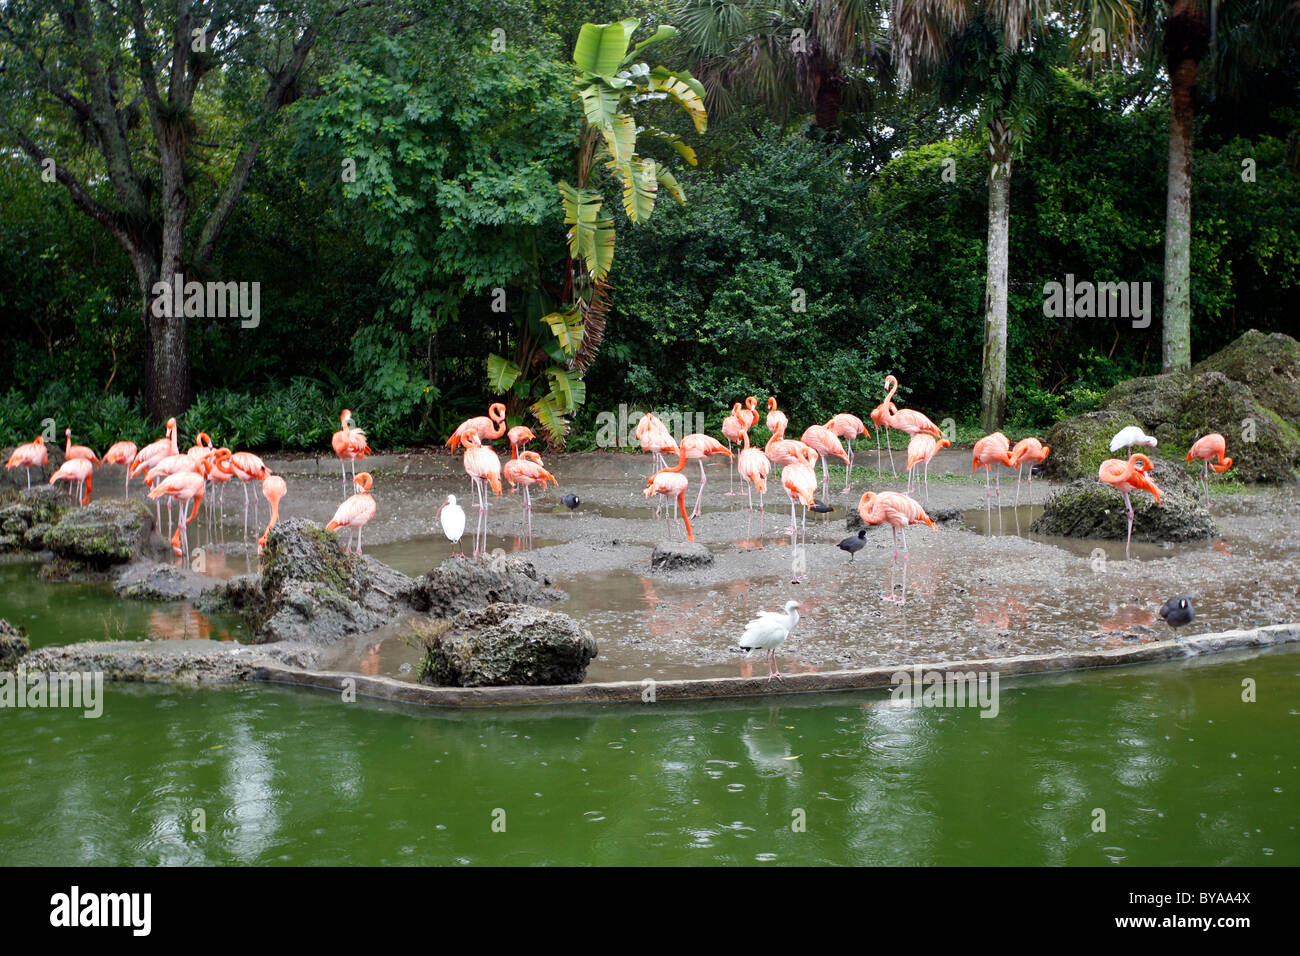 Flamingoes, Miami Metro Zoo, Florida, United States of America, USA Stock Photo